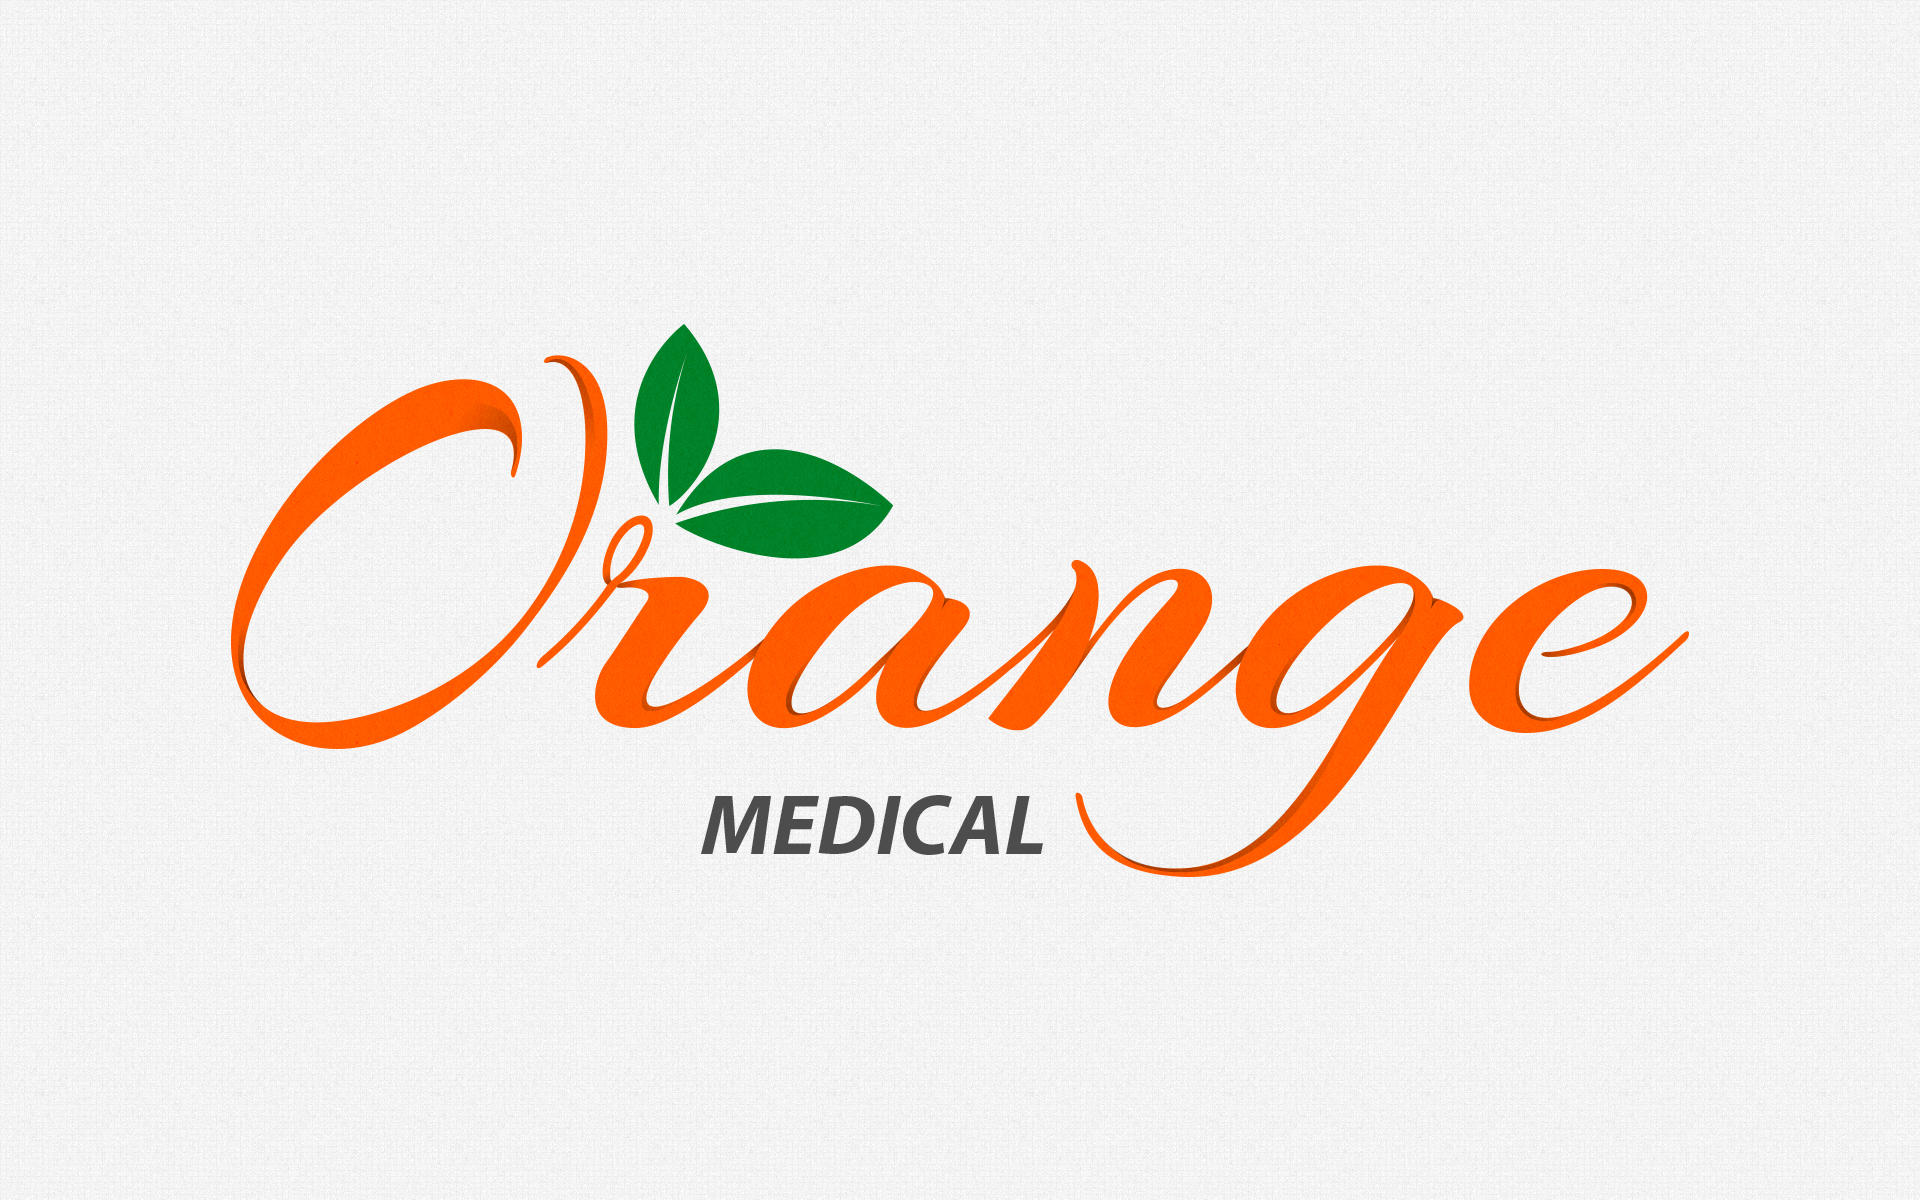 Orange Medical